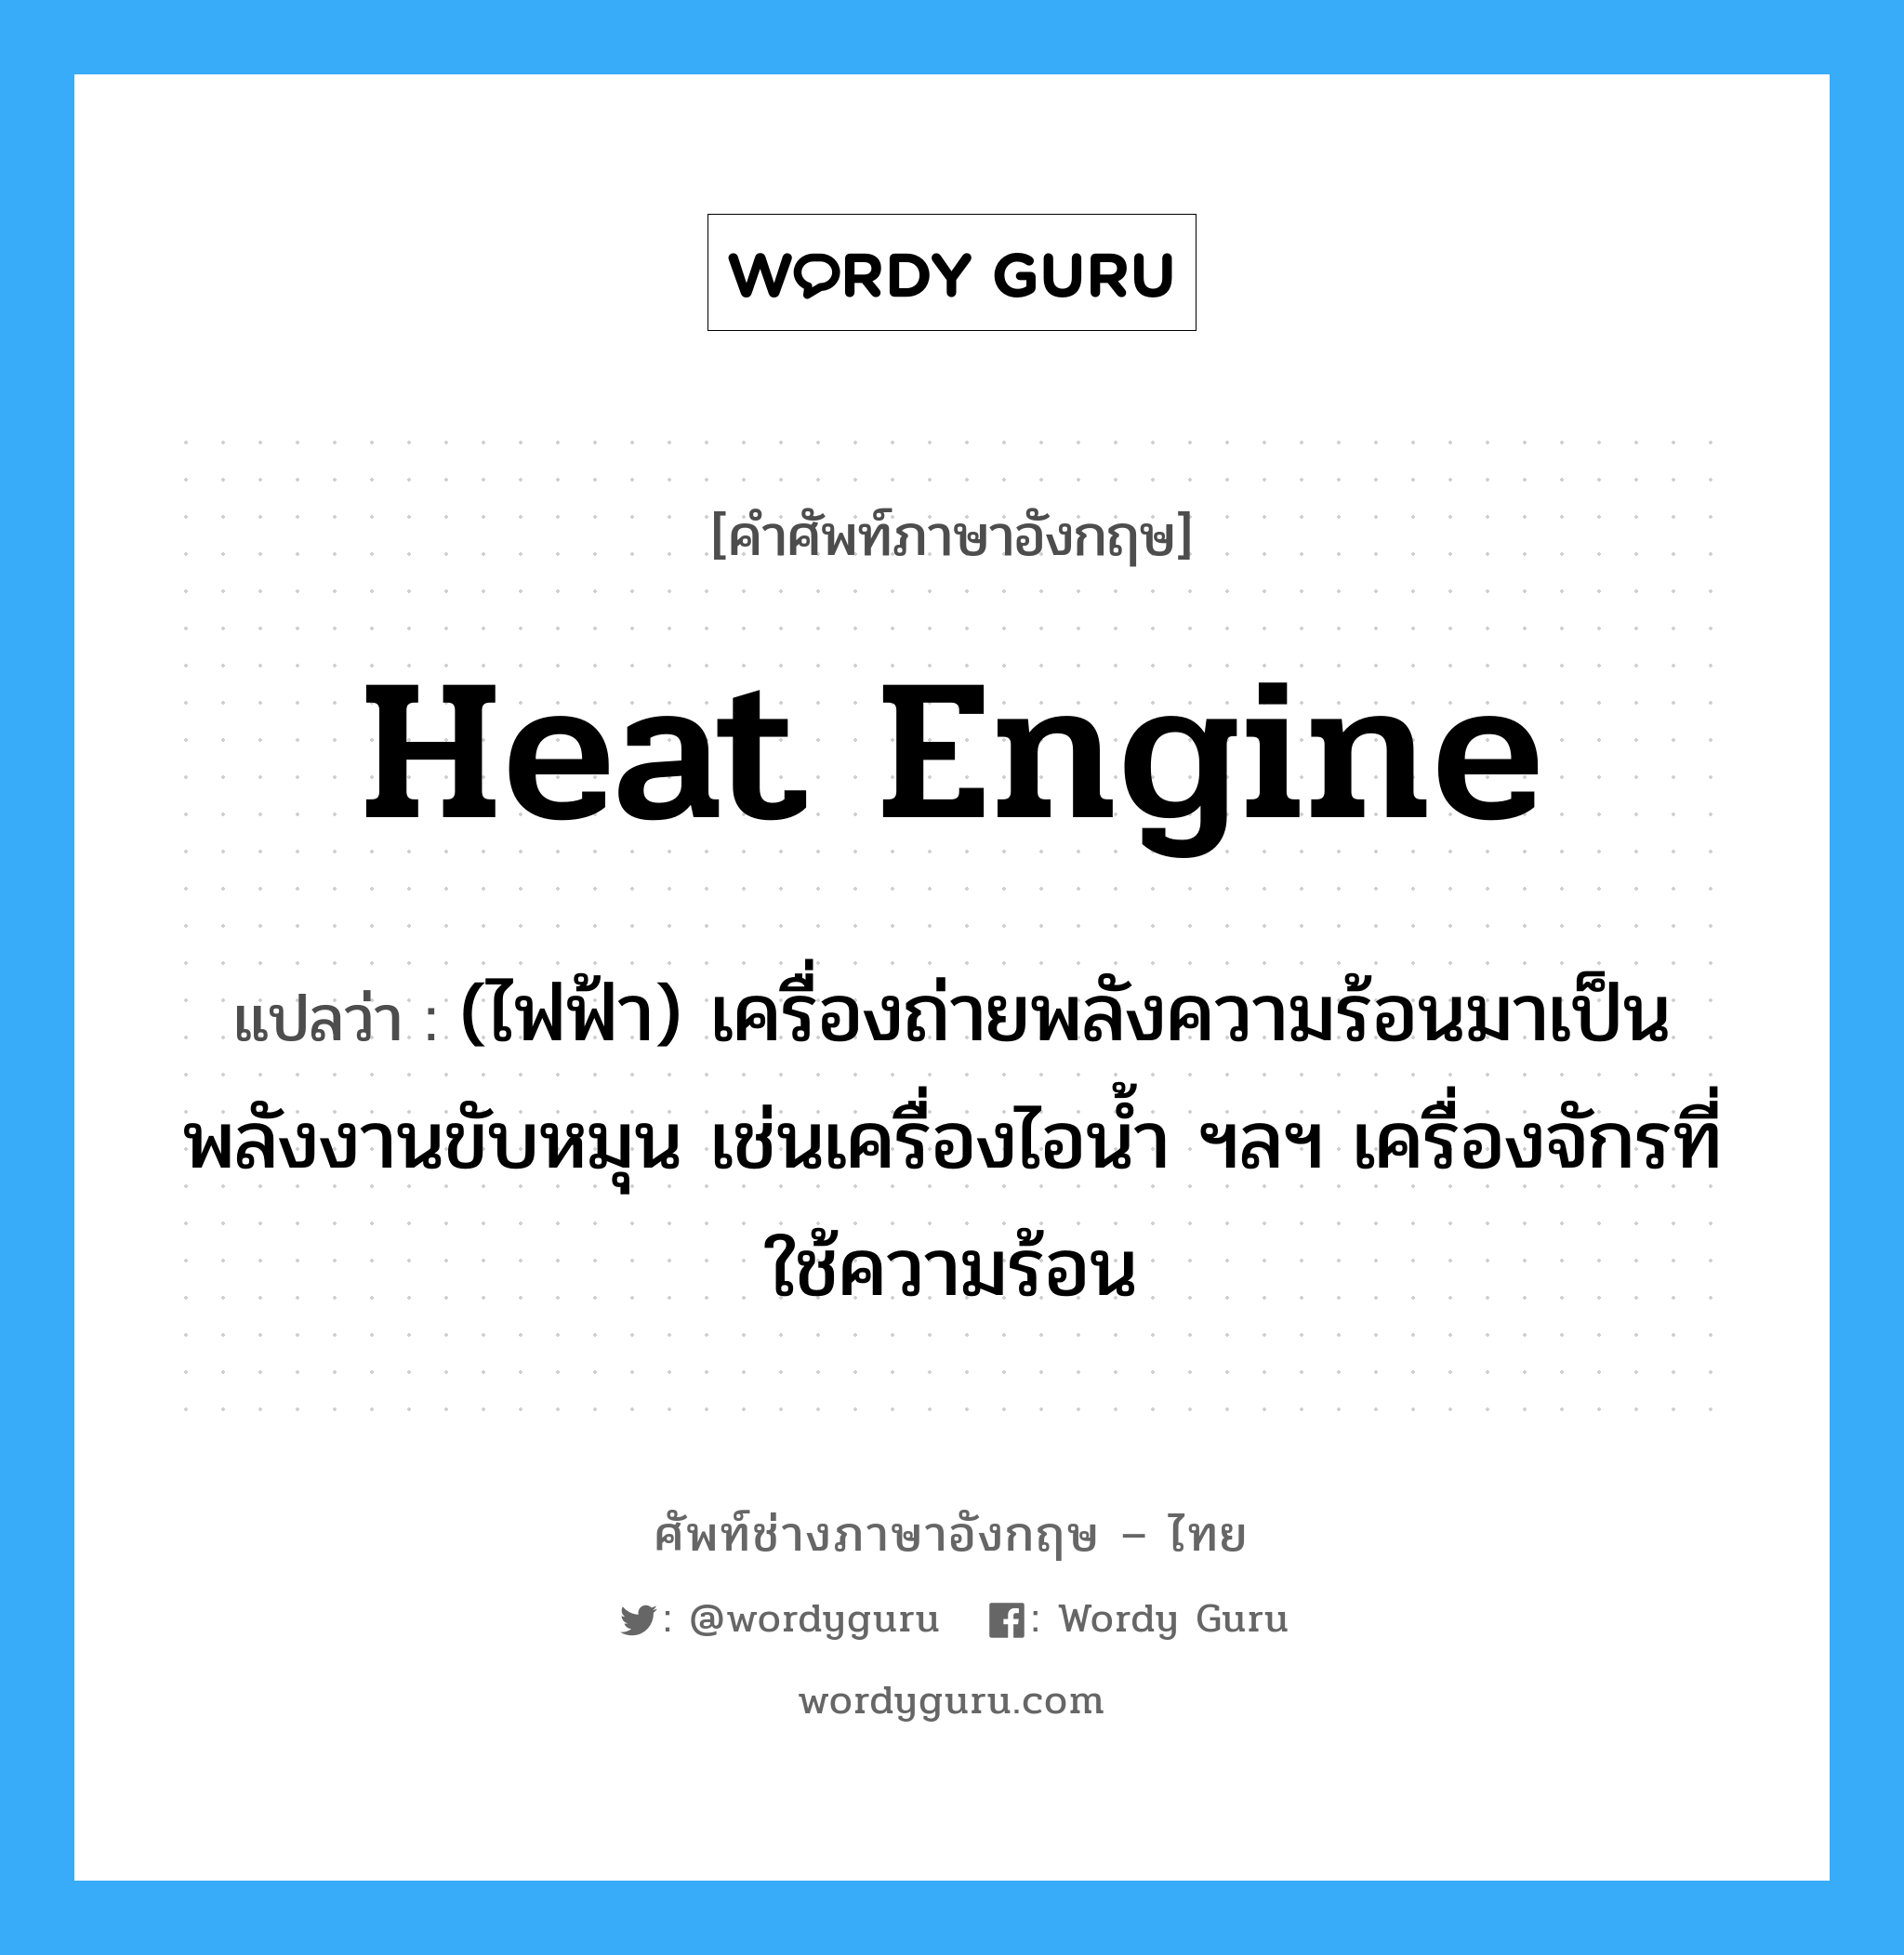 heat engine แปลว่า?, คำศัพท์ช่างภาษาอังกฤษ - ไทย heat engine คำศัพท์ภาษาอังกฤษ heat engine แปลว่า (ไฟฟ้า) เครื่องถ่ายพลังความร้อนมาเป็นพลังงานขับหมุน เช่นเครื่องไอน้ำ ฯลฯ เครื่องจักรที่ใช้ความร้อน